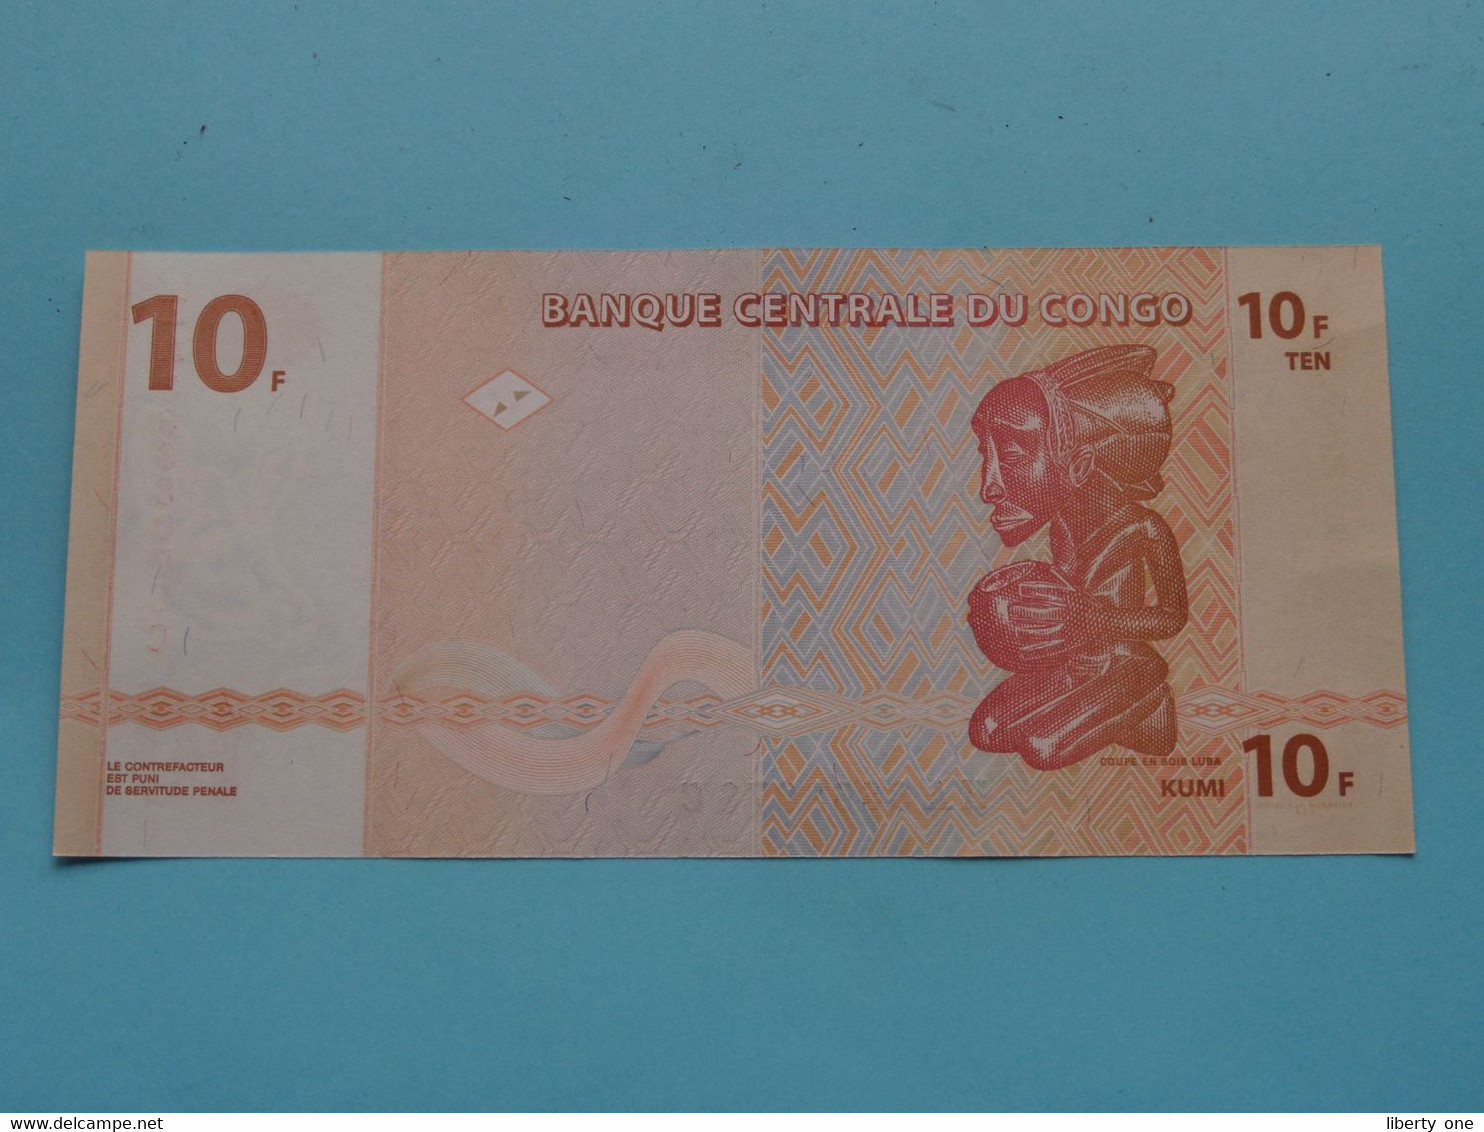 10 ( Dix ) Francs ( HA3668076C ) 2003 > Banque Centrale Du CONGO ( For Grade, Please See Photo ) UNC ! - Republik Kongo (Kongo-Brazzaville)